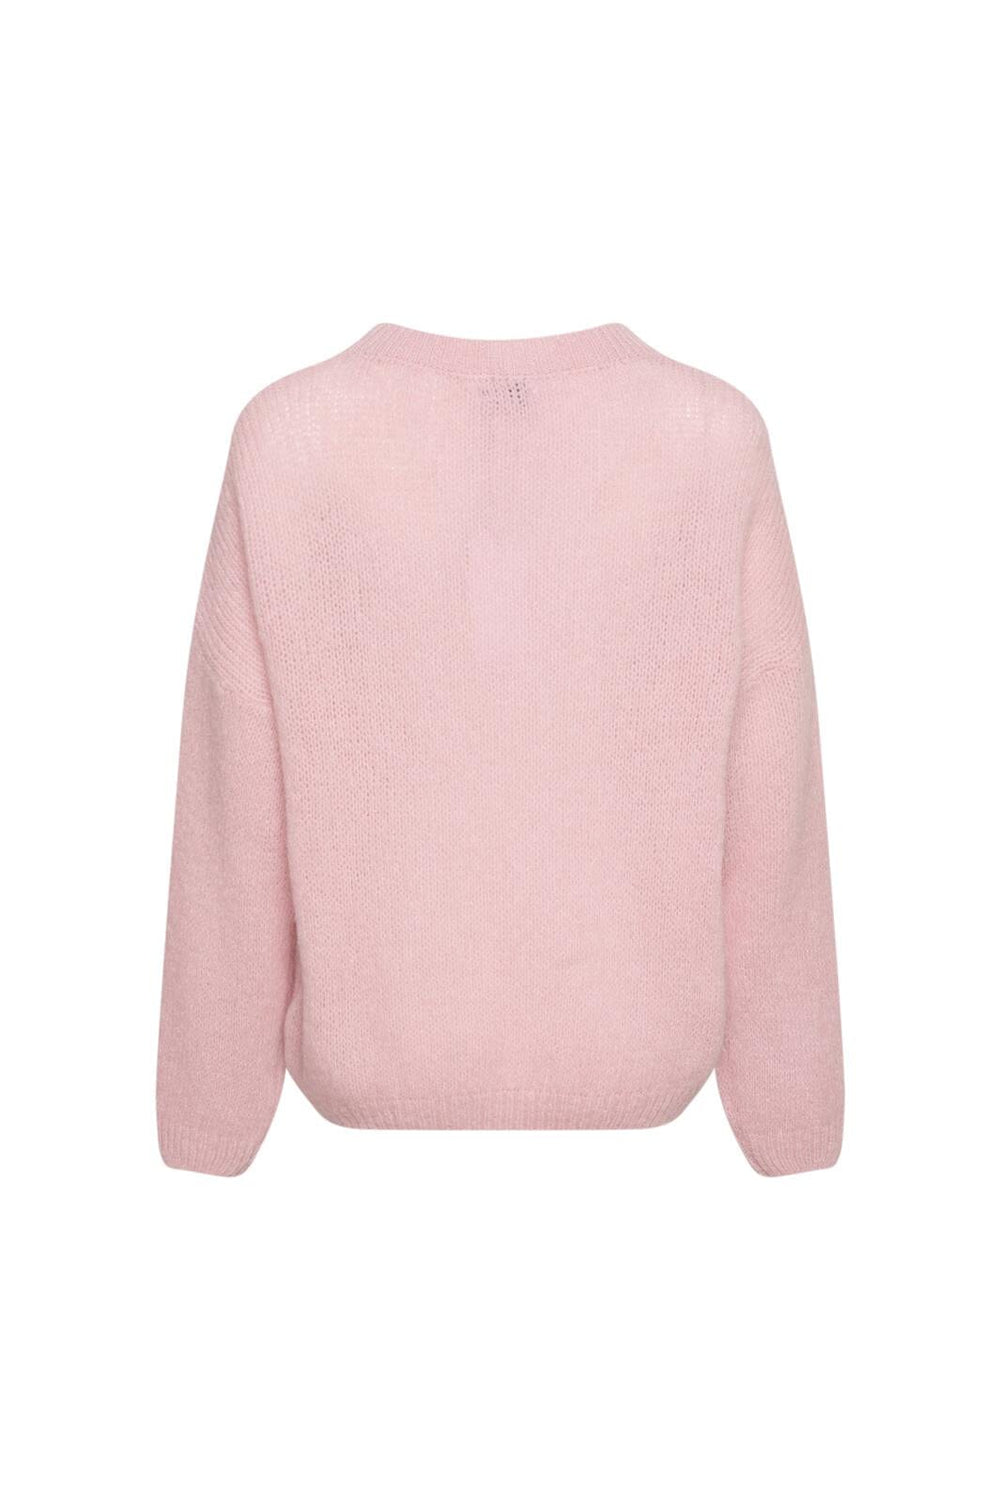 Noella - Renn Knit Sweater - 005 Rose